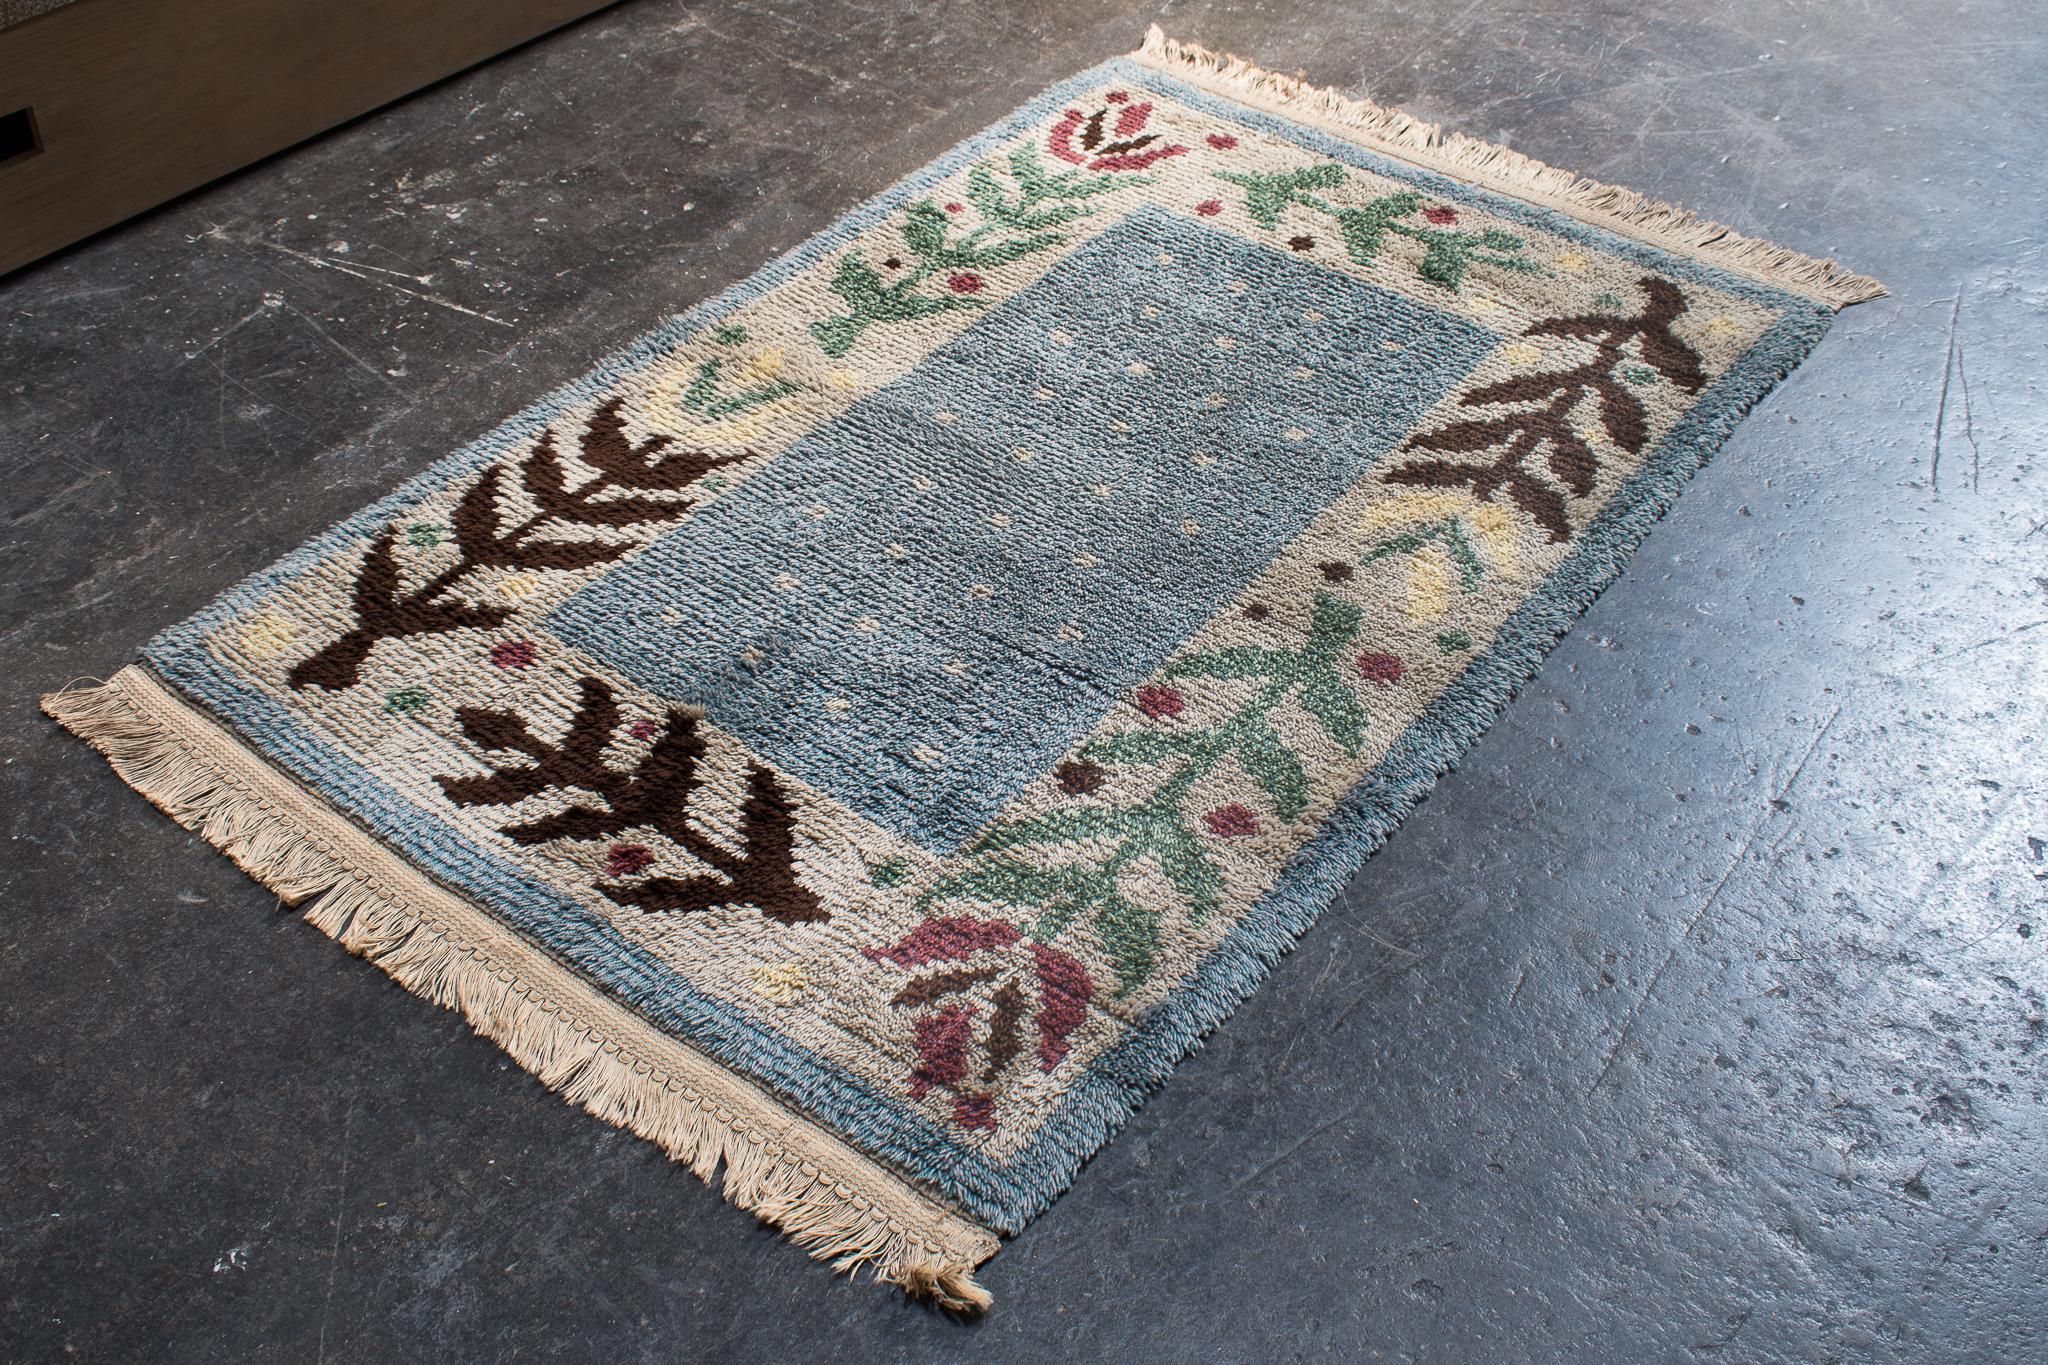 Skandinavisch moderner schwedischer Rya-Teppich. Hellblau, cremefarben, rosa, grün und braun mit floralem Muster. Dieser handgehäkelte Wollteppich eignet sich perfekt für den Nachttisch oder als Überwurf über einen größeren Teppich. Die Farben